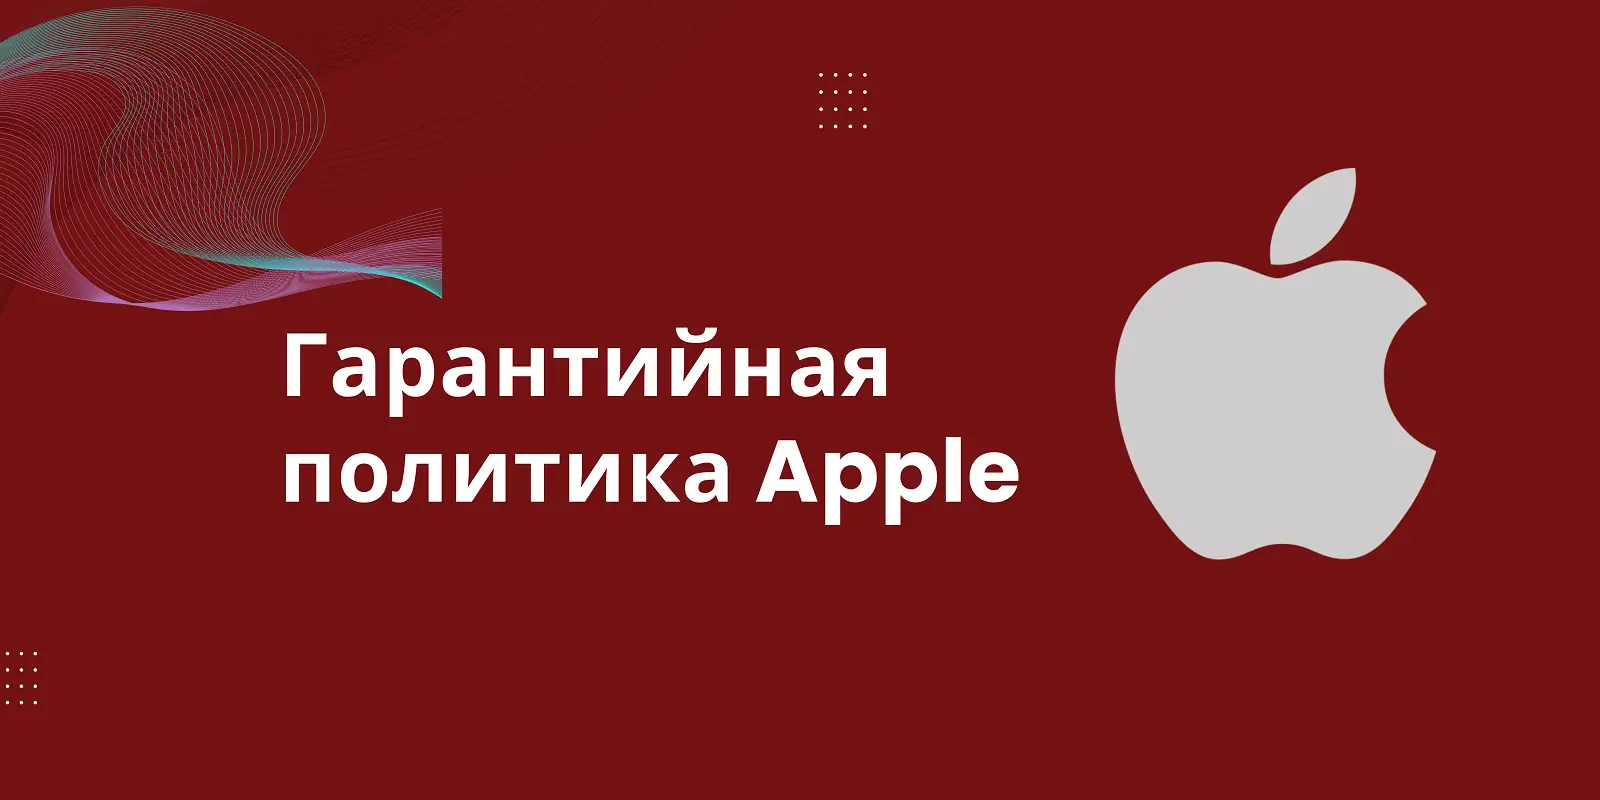 Аннулирует ли Scarlet iOS гарантию Apple?